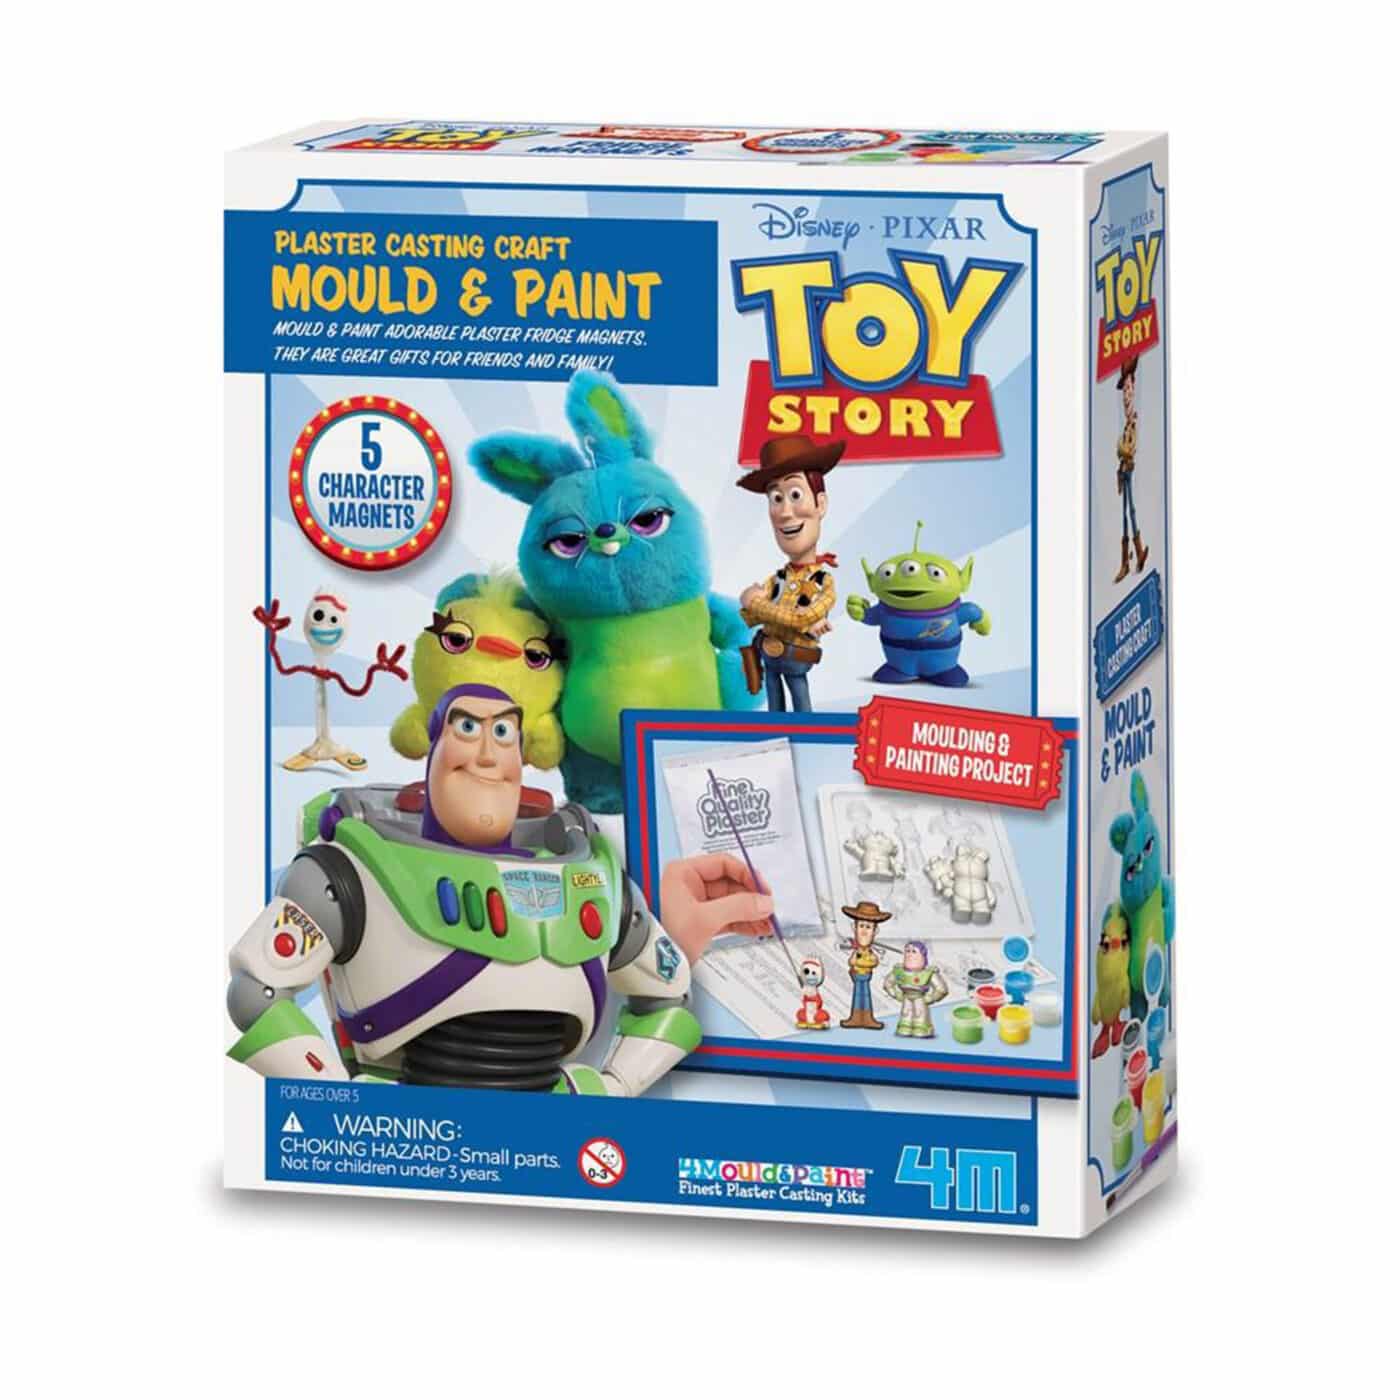 4M - Mould & Paint Toy story - Disney Pixar